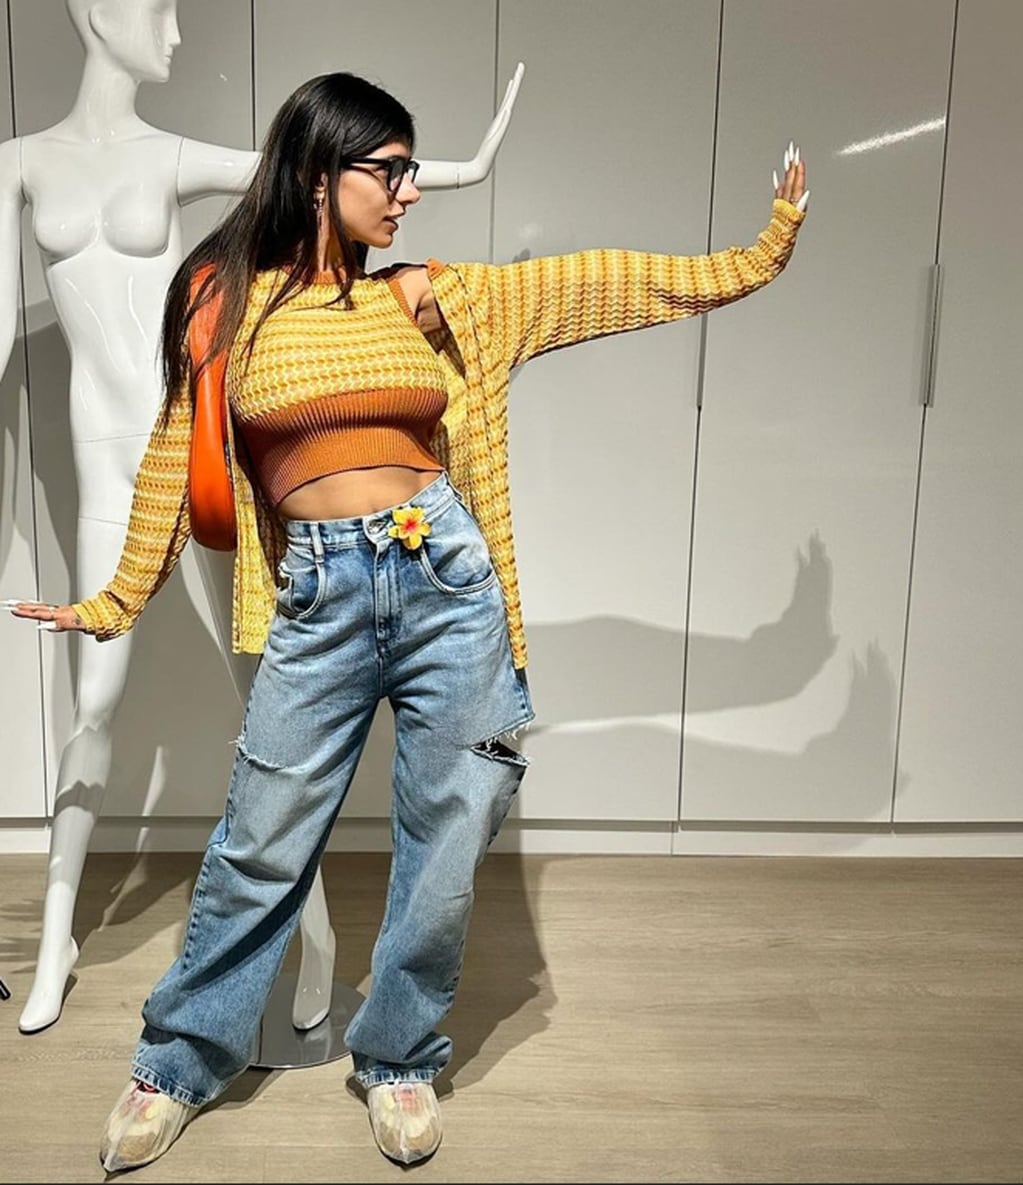 Mia Khalifa encendió las redes con un top underboob y jean ultra ajustado